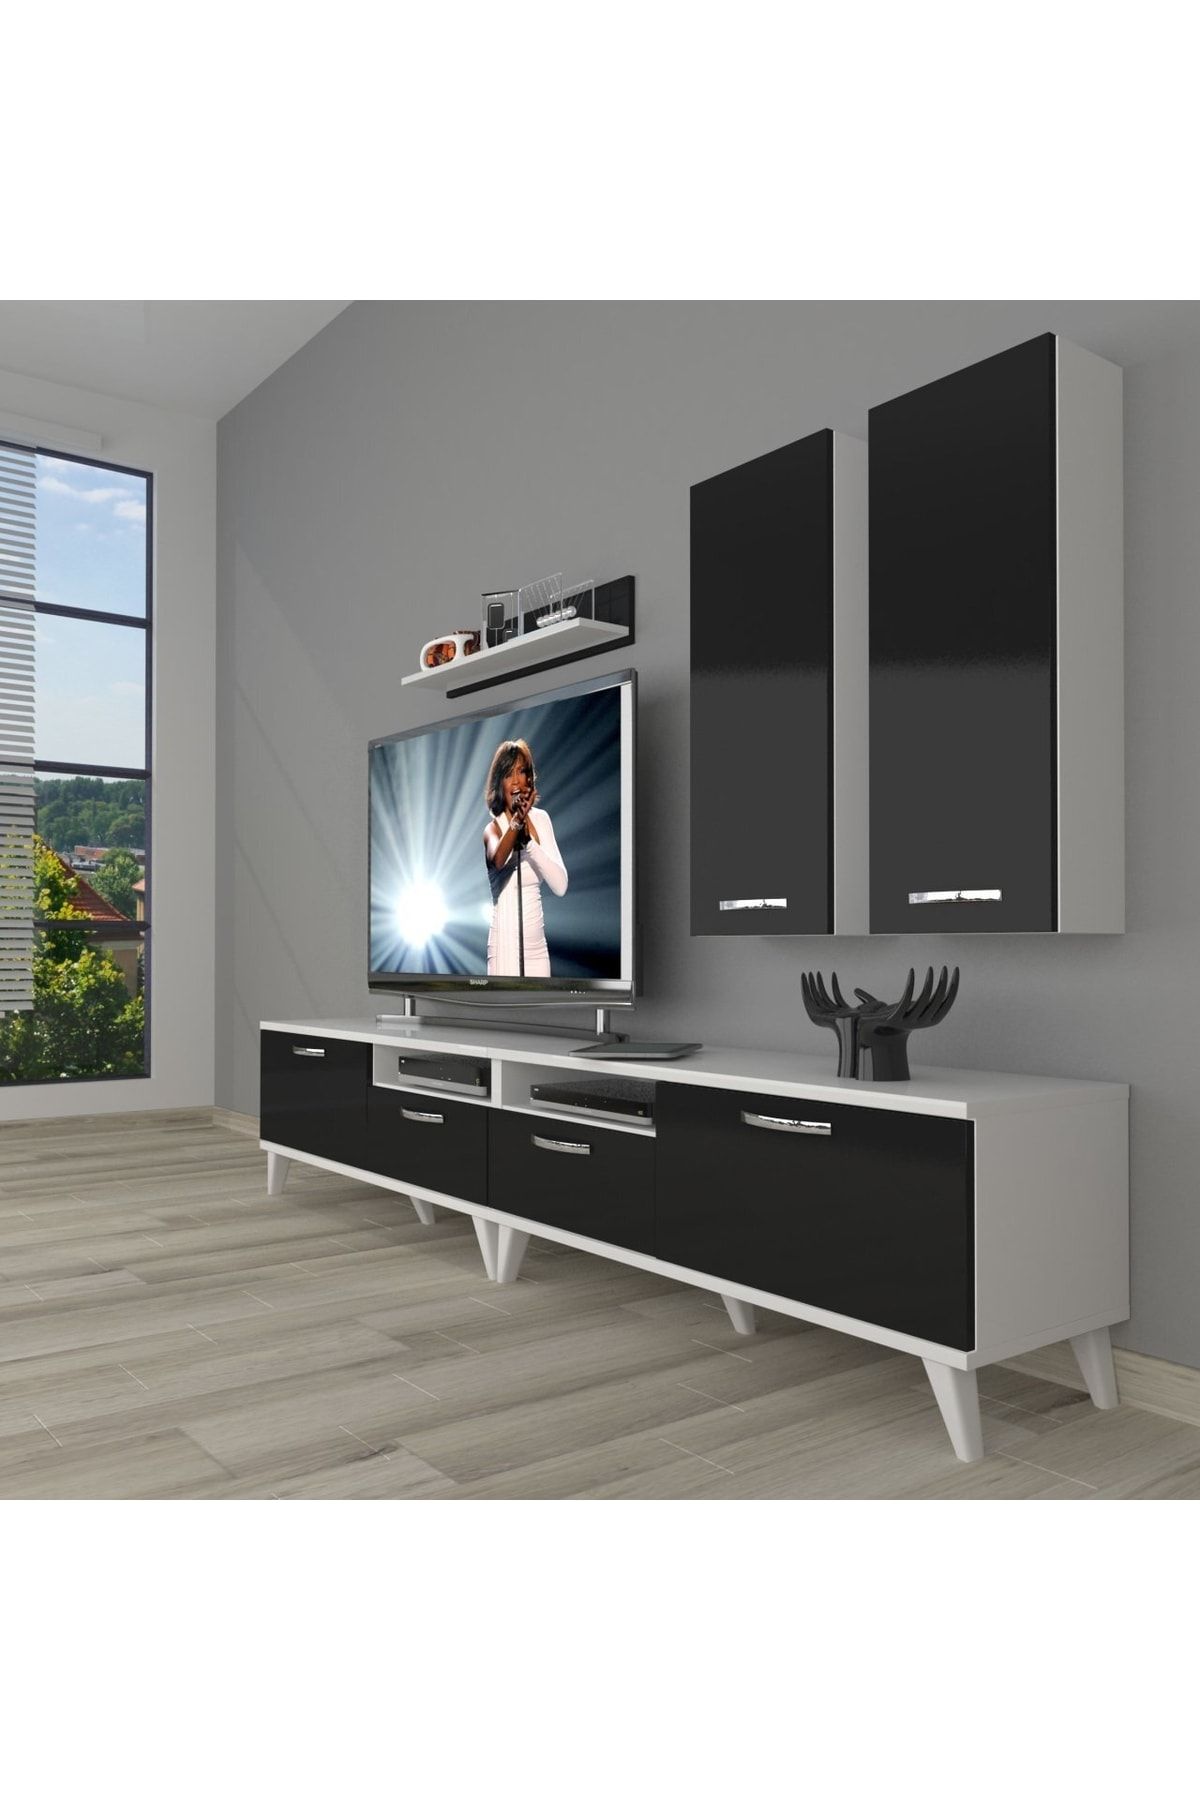 Decoraktiv Eko 5220d Slm Retro Tv Ünitesi Tv Sehpası - Beyaz - Siyah